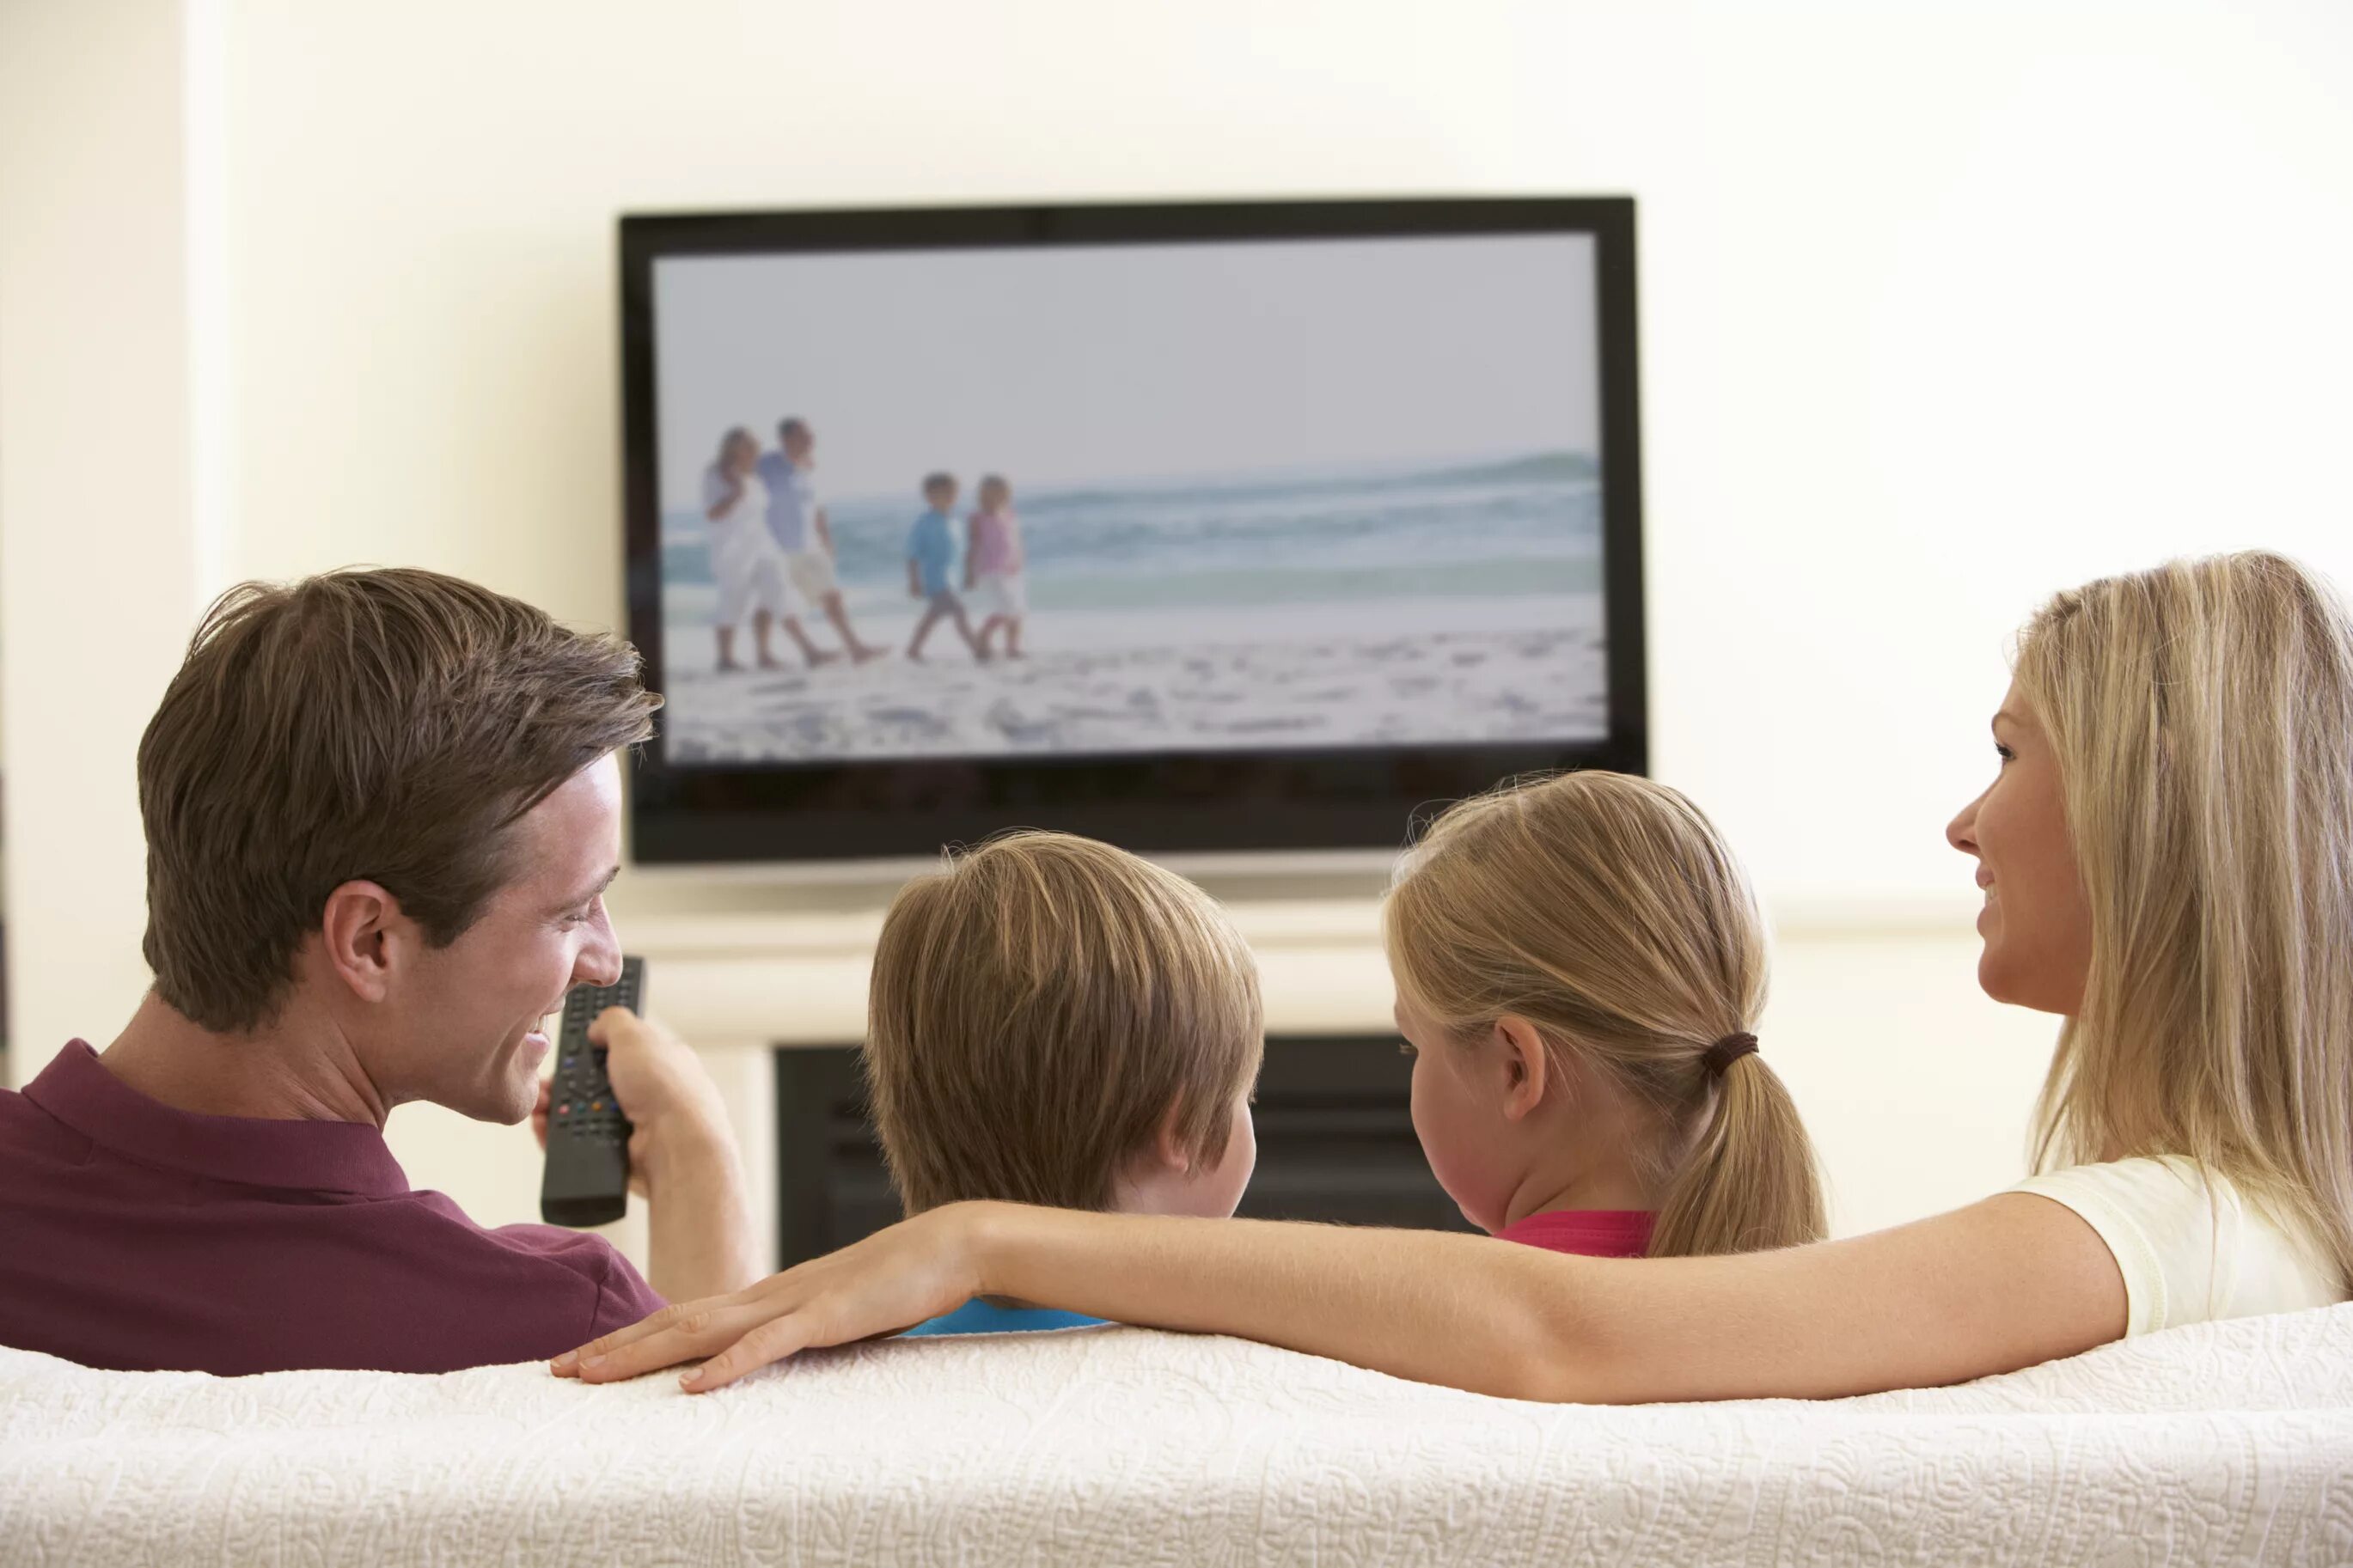 Сайт для просмотра вместе с другом. Семья возле телевизора. Счастливая семья у телевизора. Подросток и телевизор.